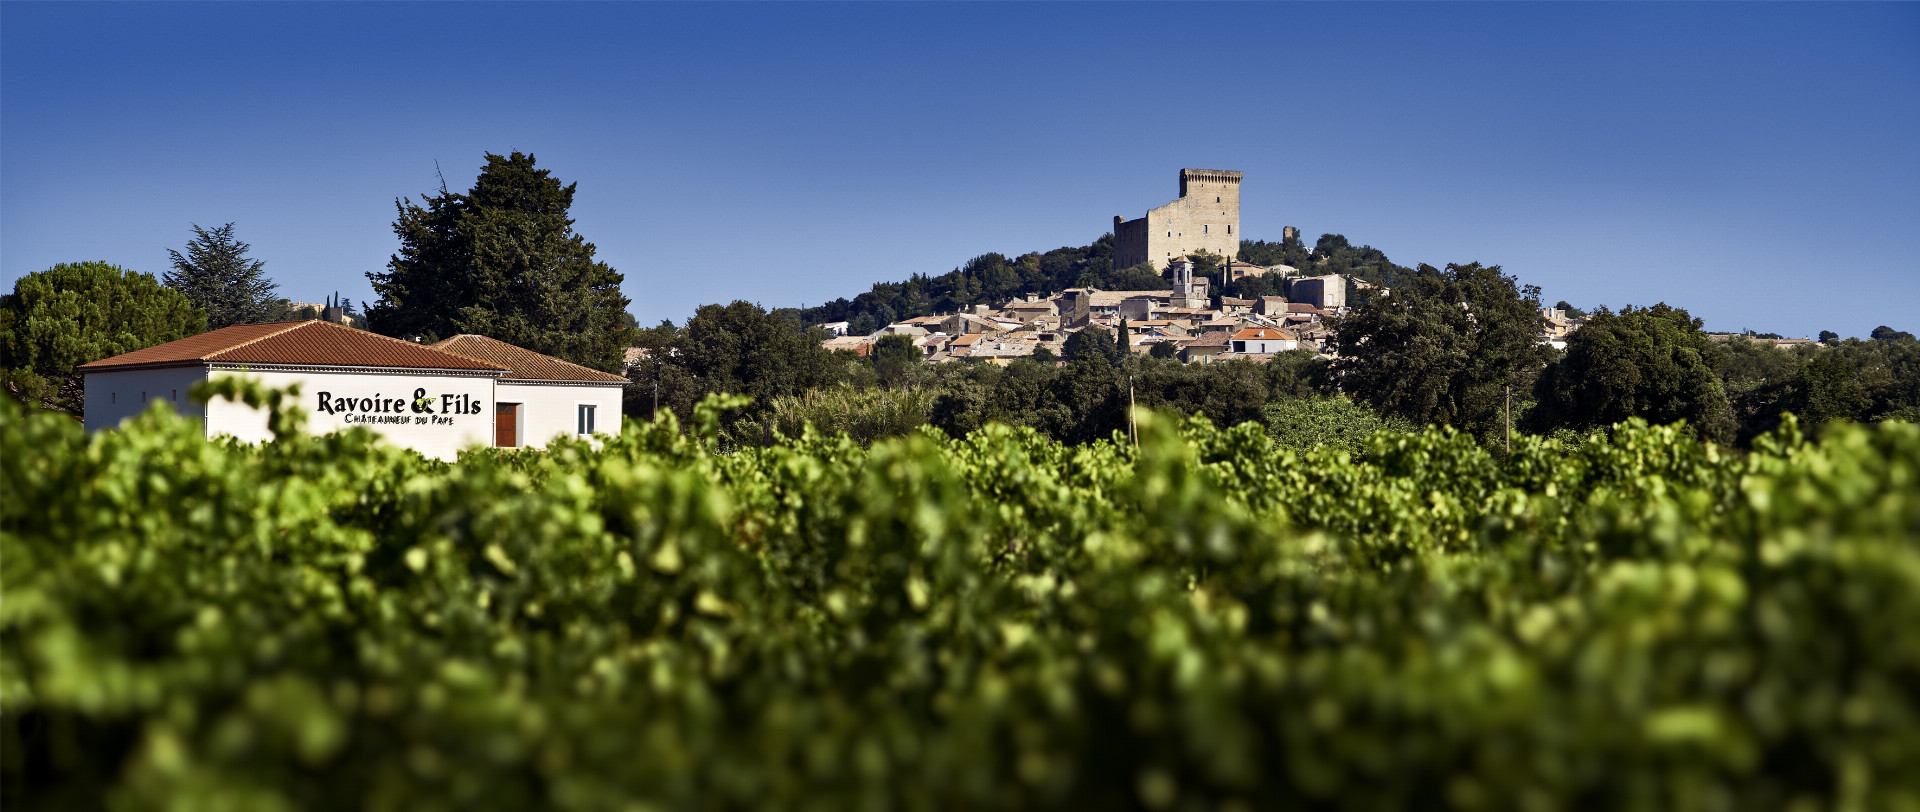 Objevte vína z údolí řeky Rhône a získejte dárek